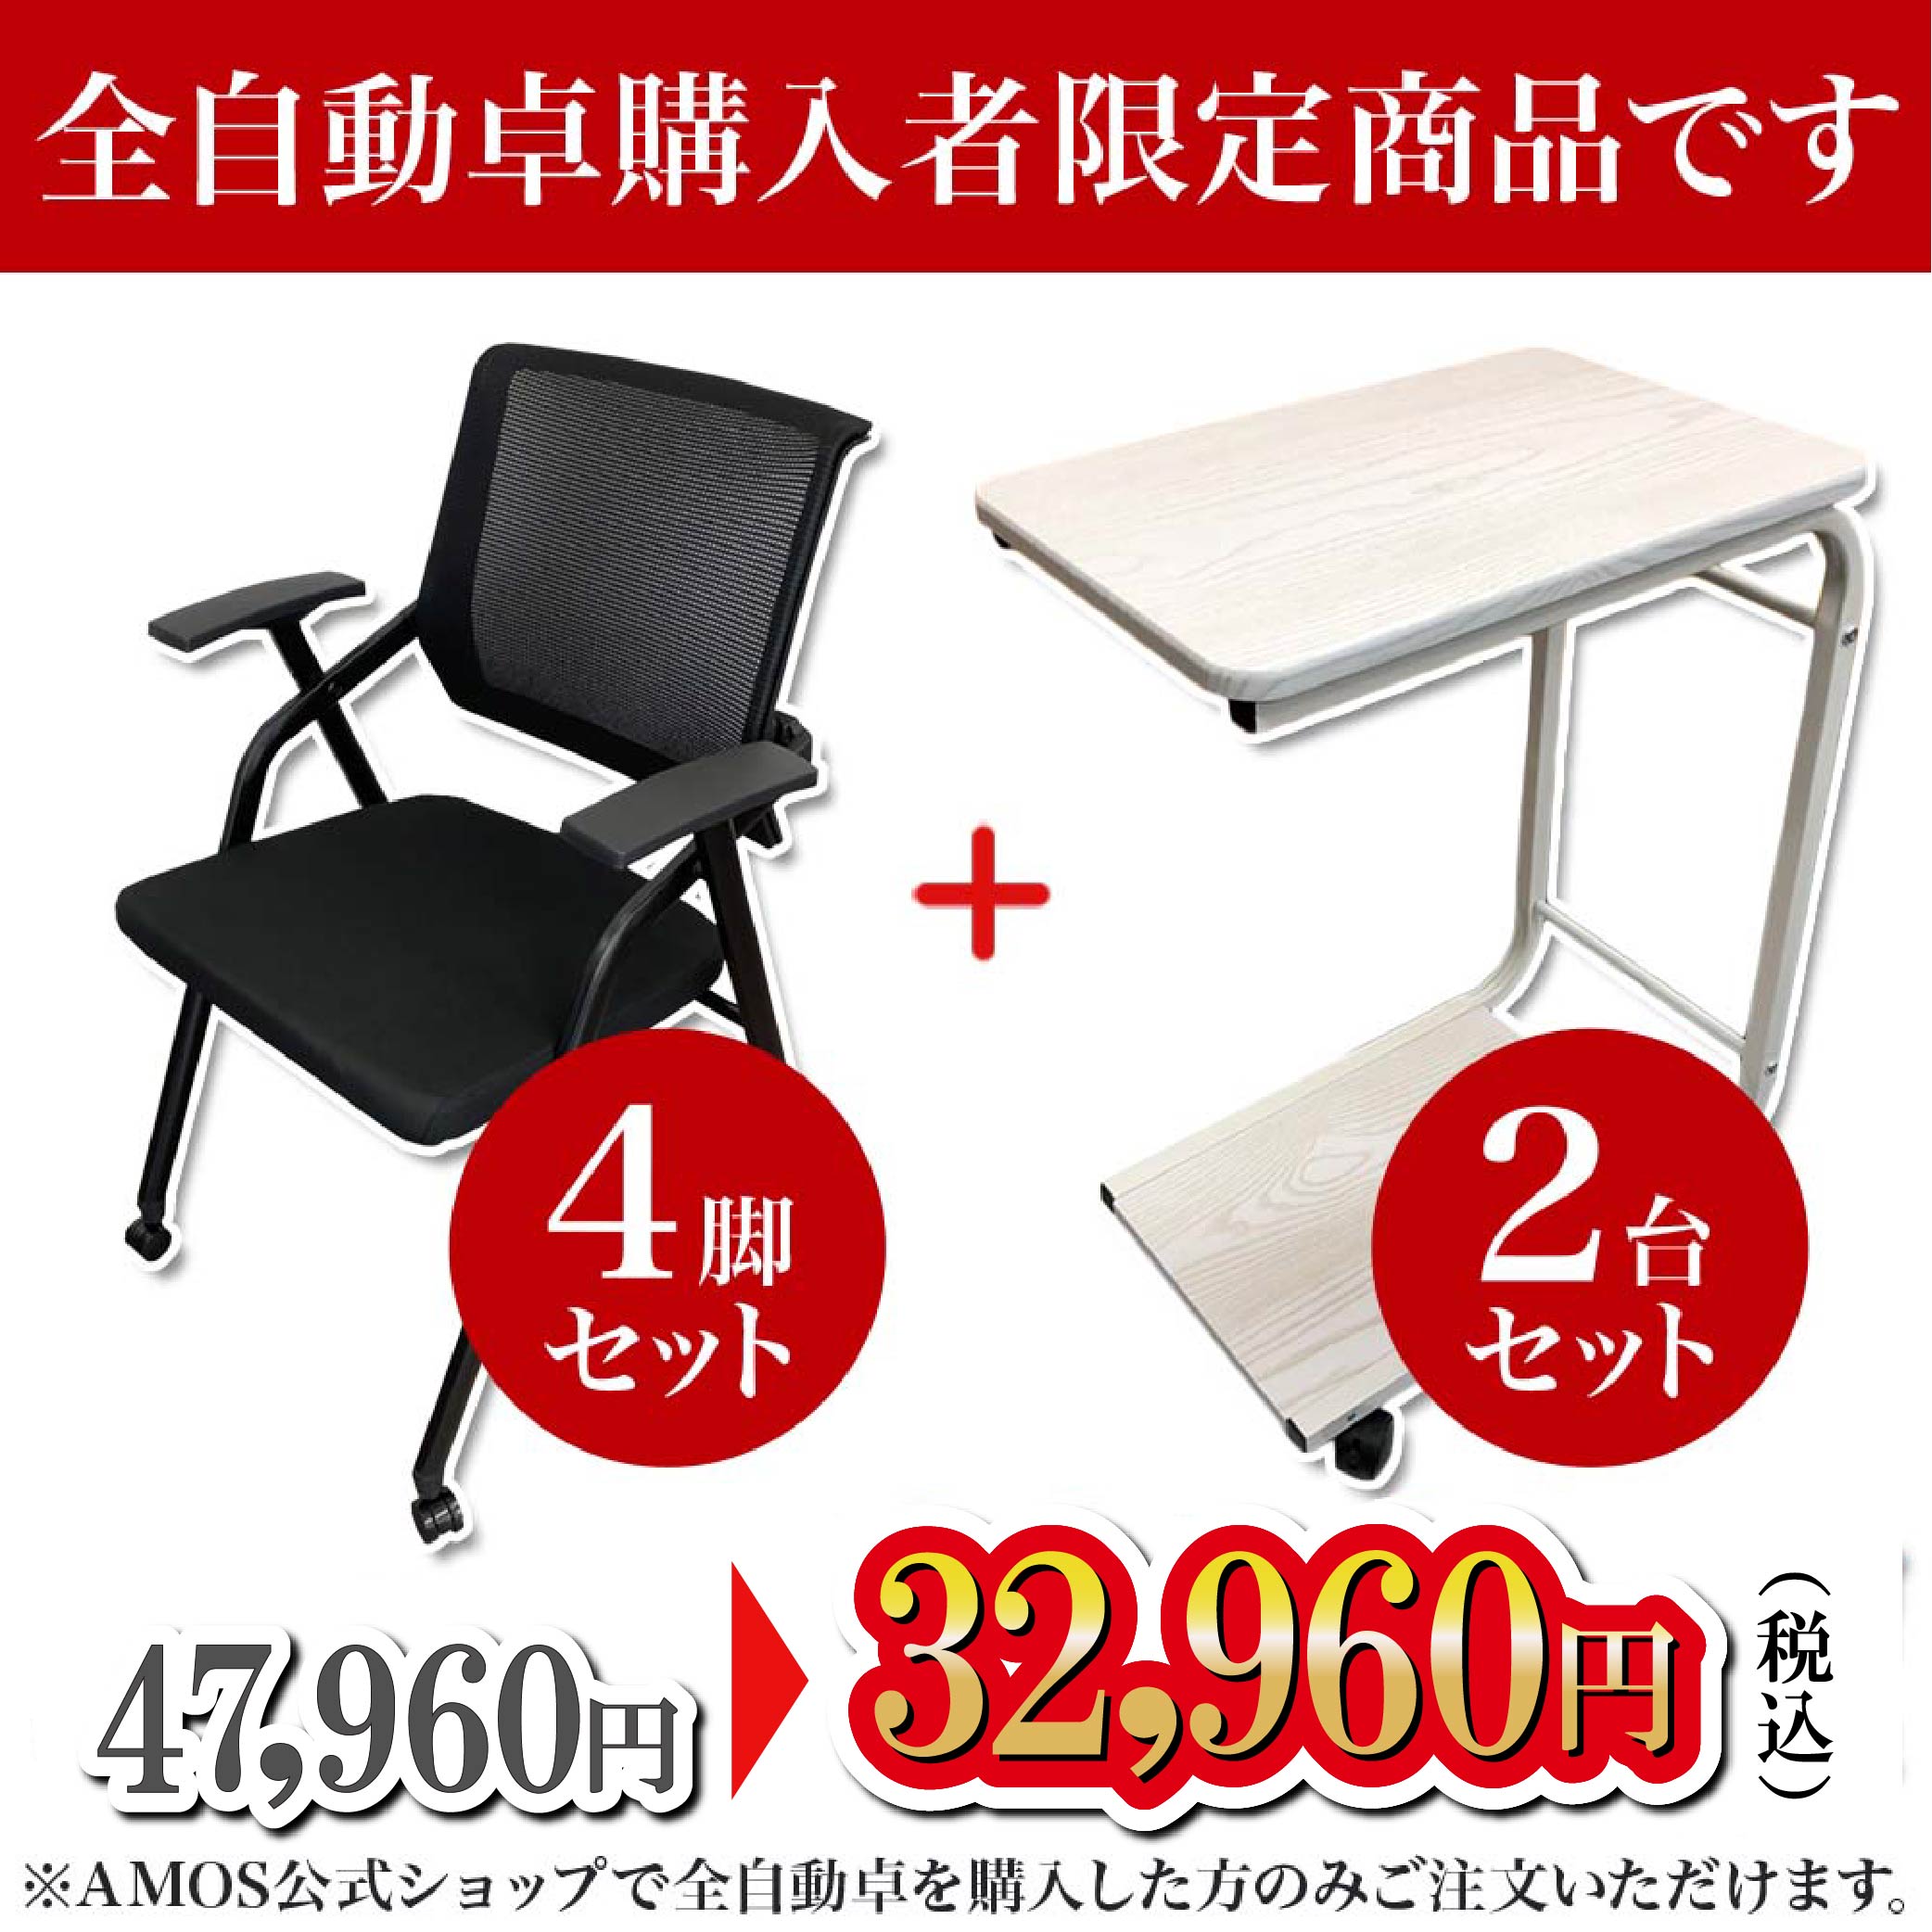 【JPシリーズ購入者限定】折りたたみ椅子4脚・サイドテーブル2個セット-AMOS公式ショップ